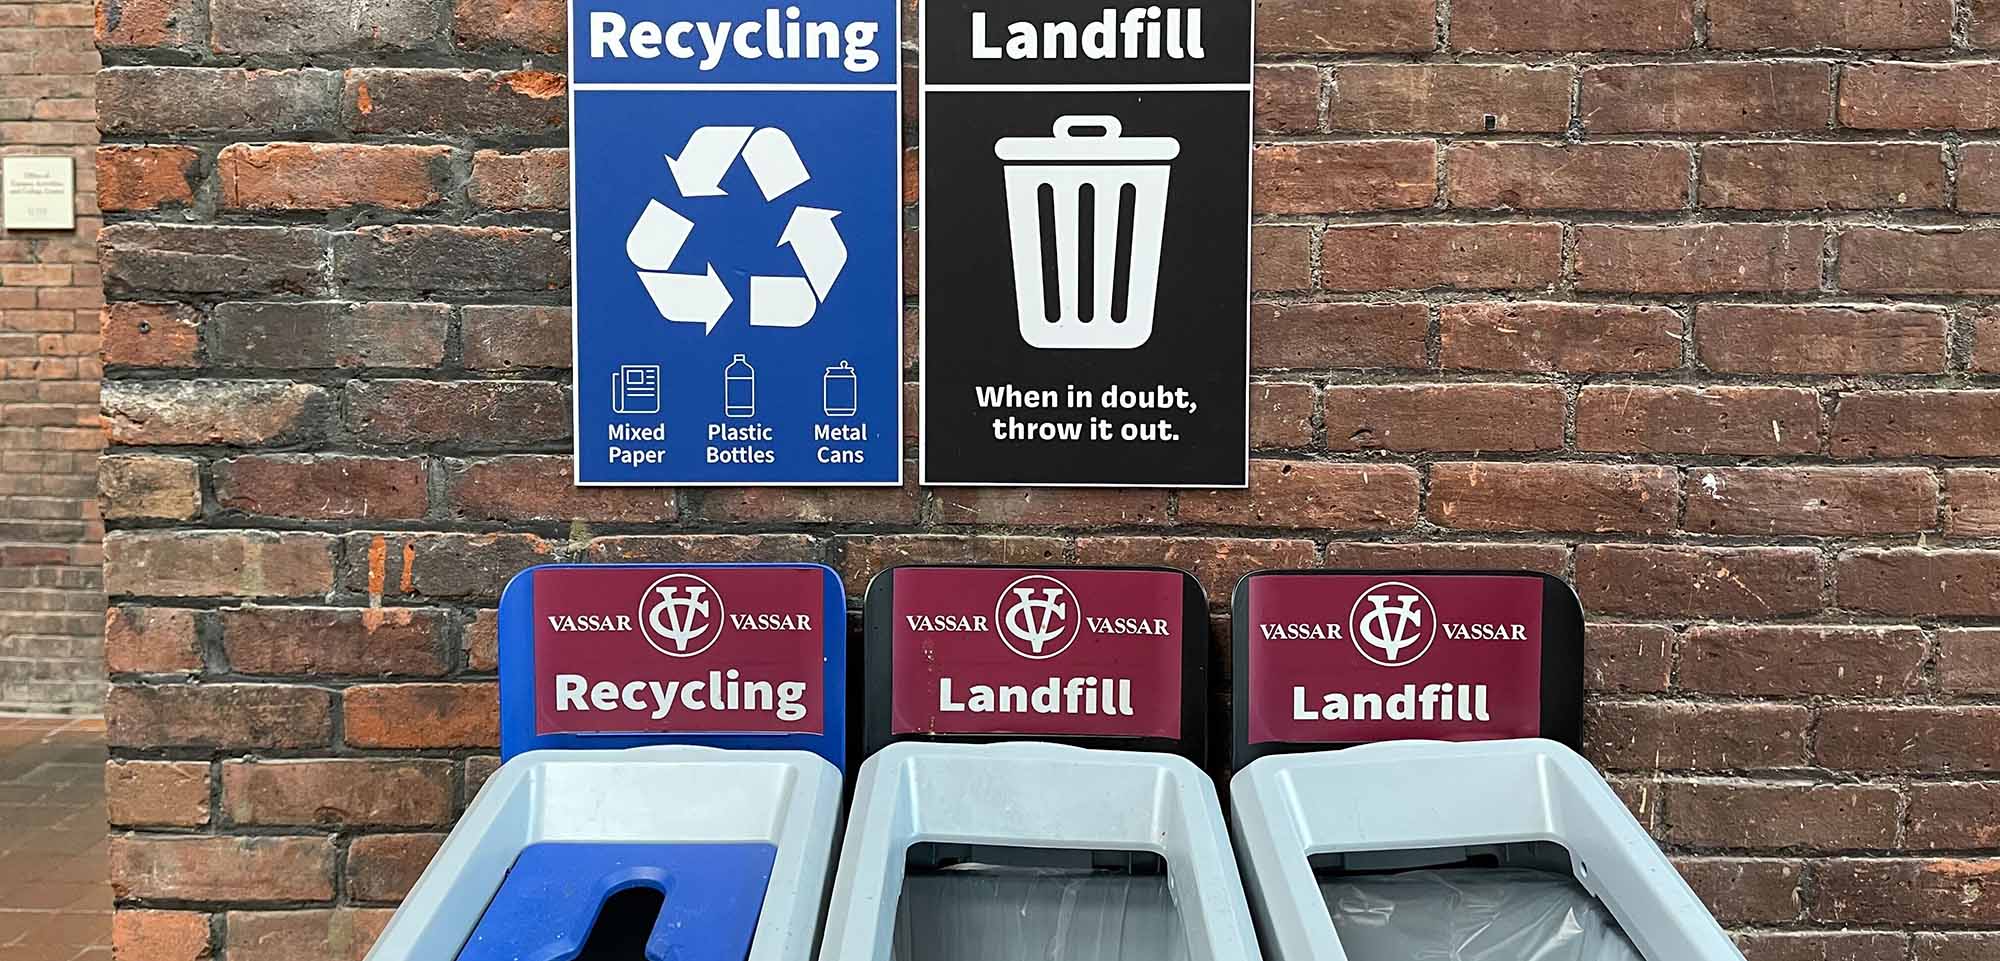 Landfill and recycling bins at Vassar.